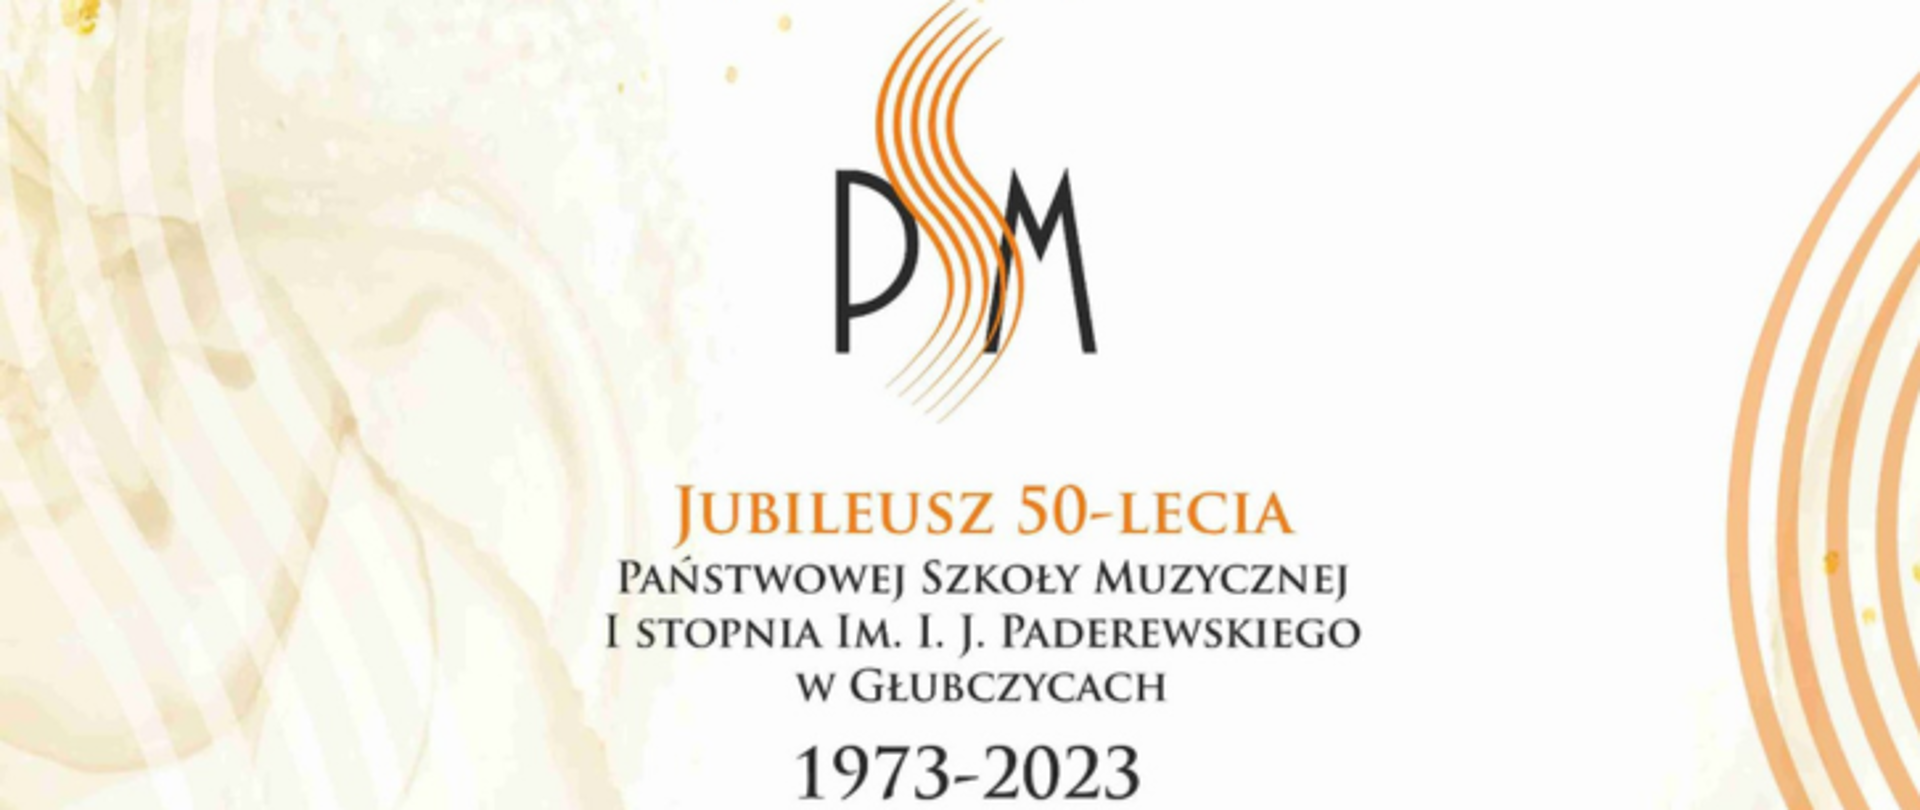 Baner z tekstem: Jubileusz 50-lecia Państwowej Szokoły Muzycznej I stopnia im. I. J. Paderewskiego w Głubczycach 1973-2023